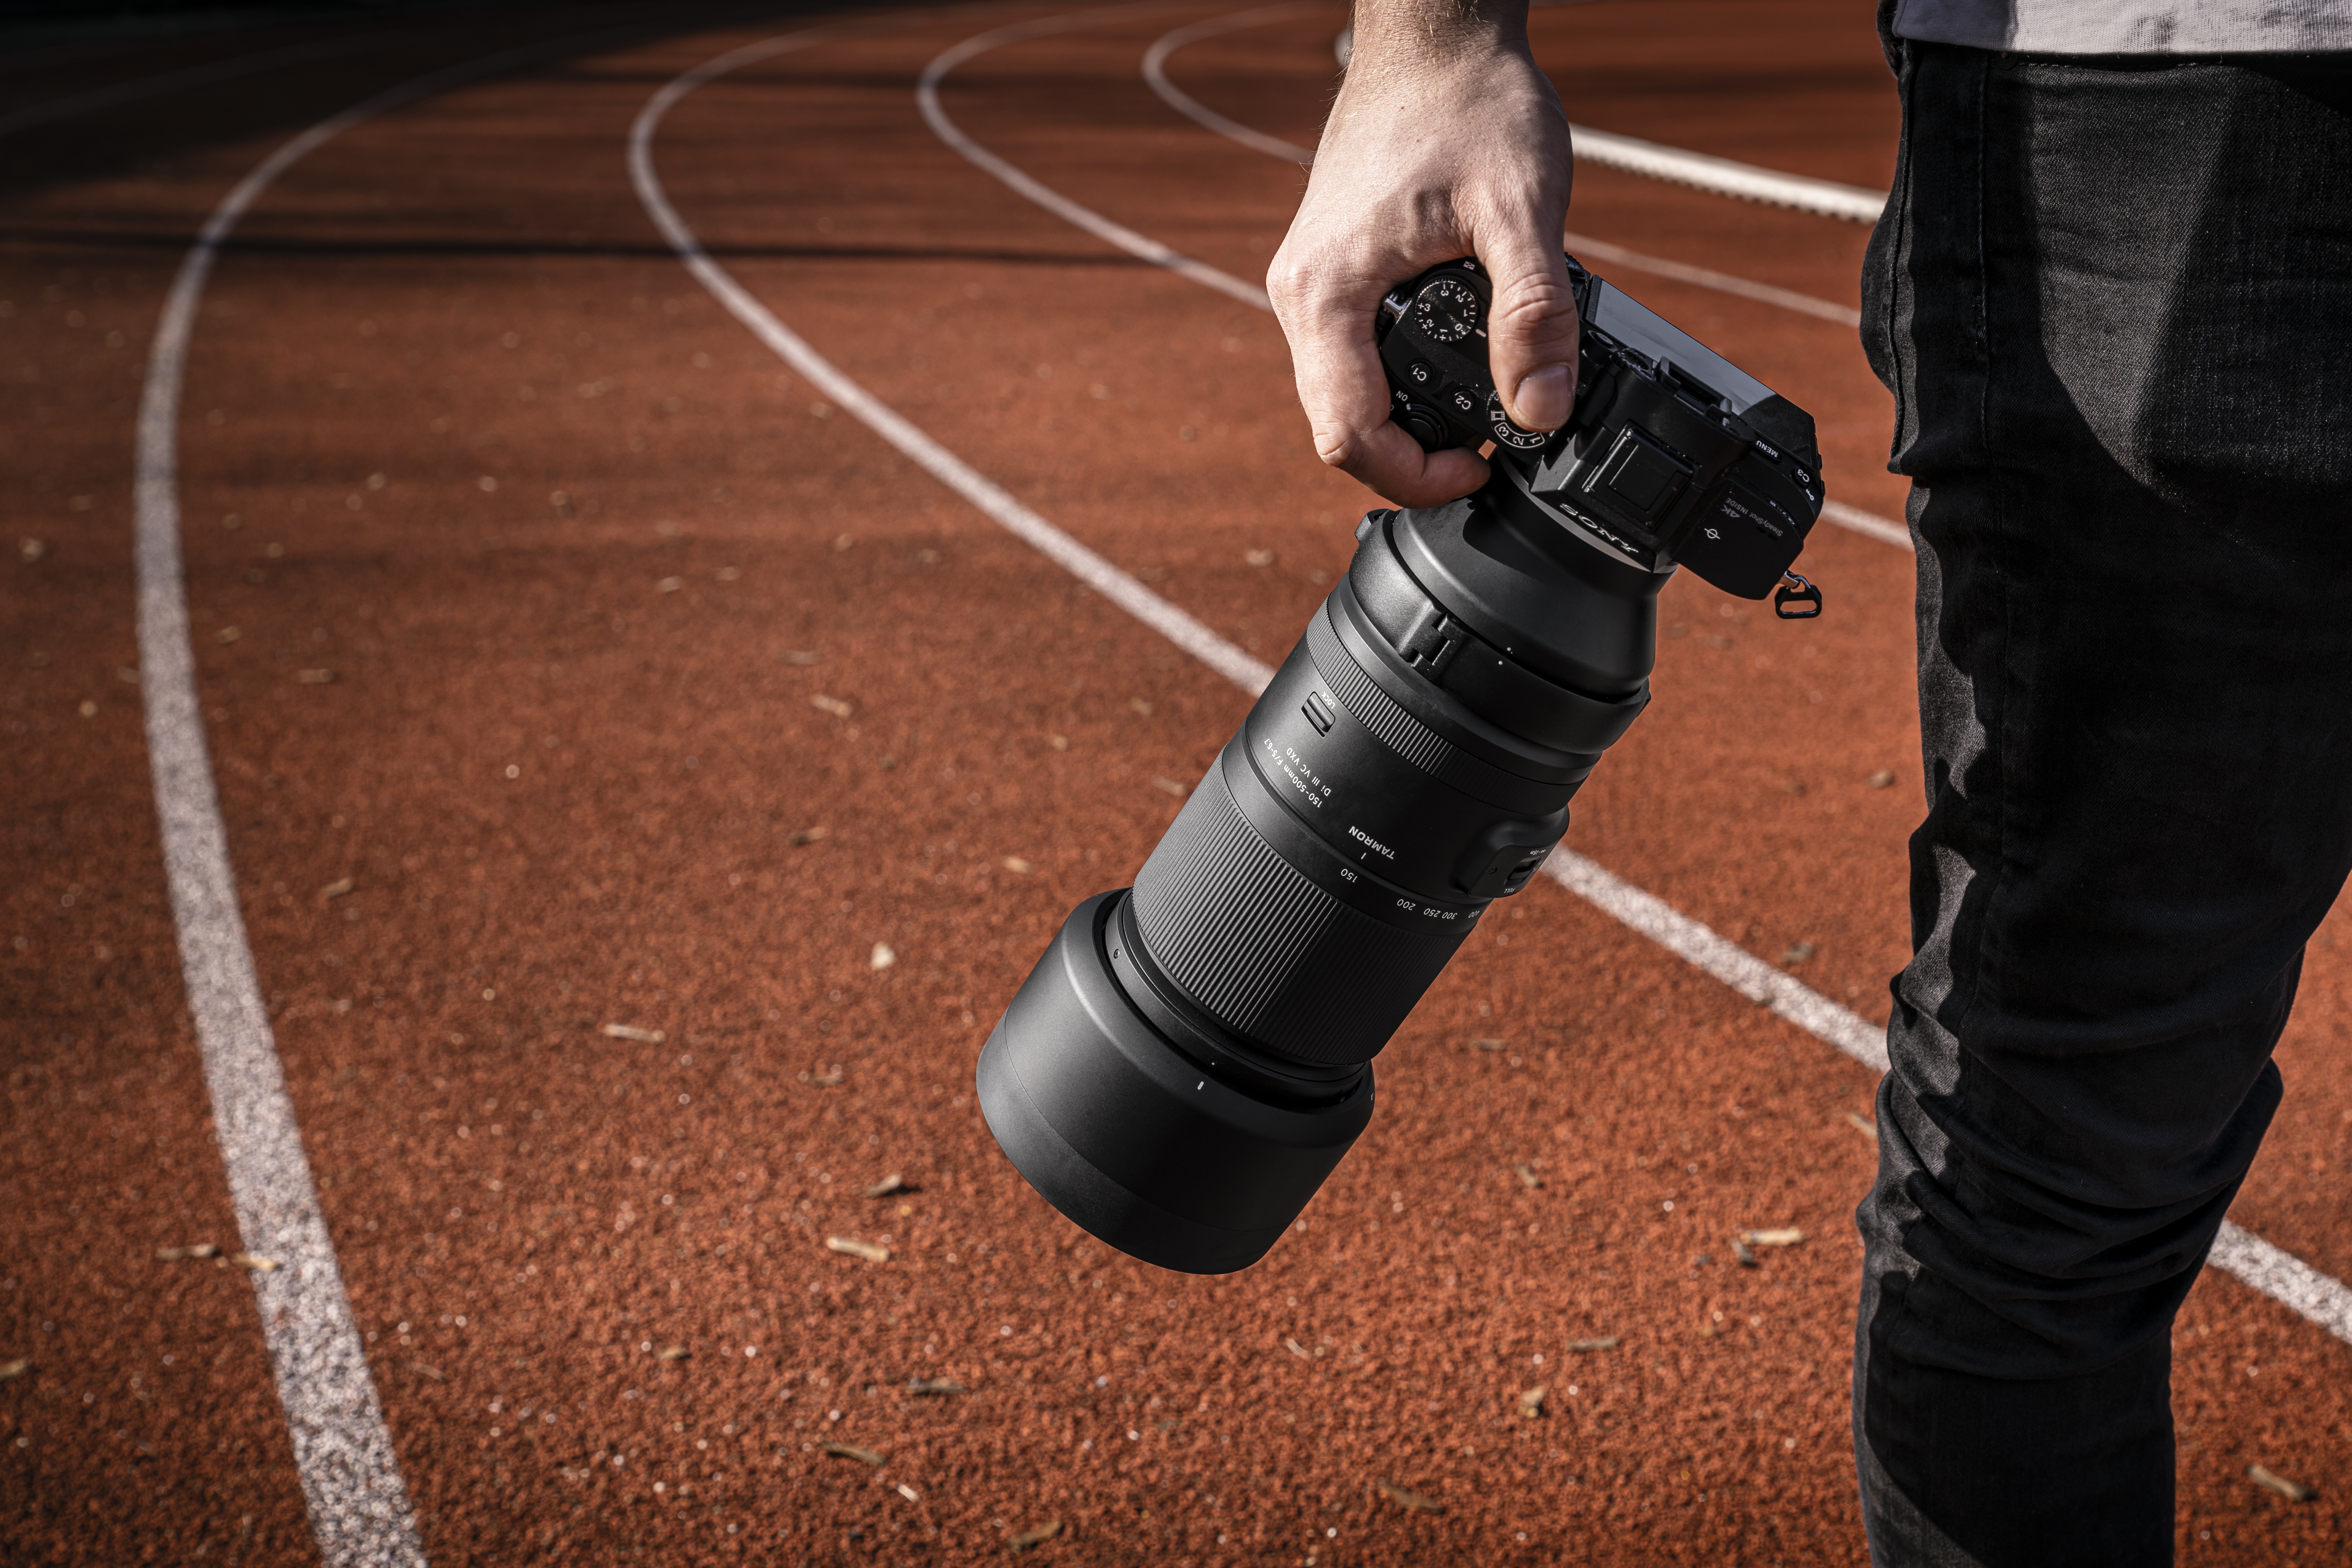 Objektiv Tamron na fotoaparátu Sony v ruce fotografa na běžecké dráze